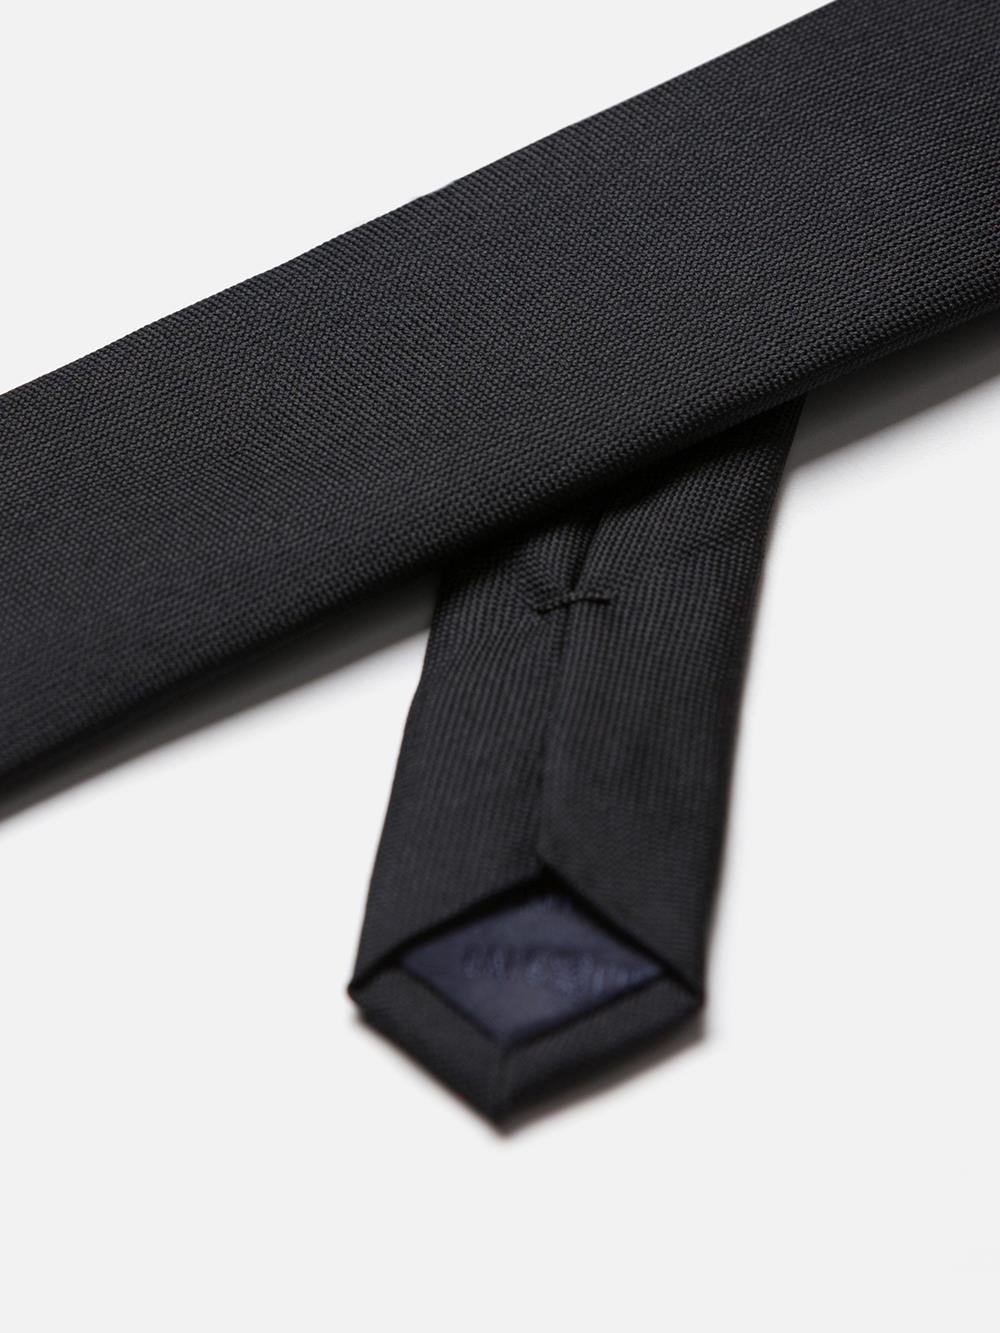 Slim tie in black silk micro braid